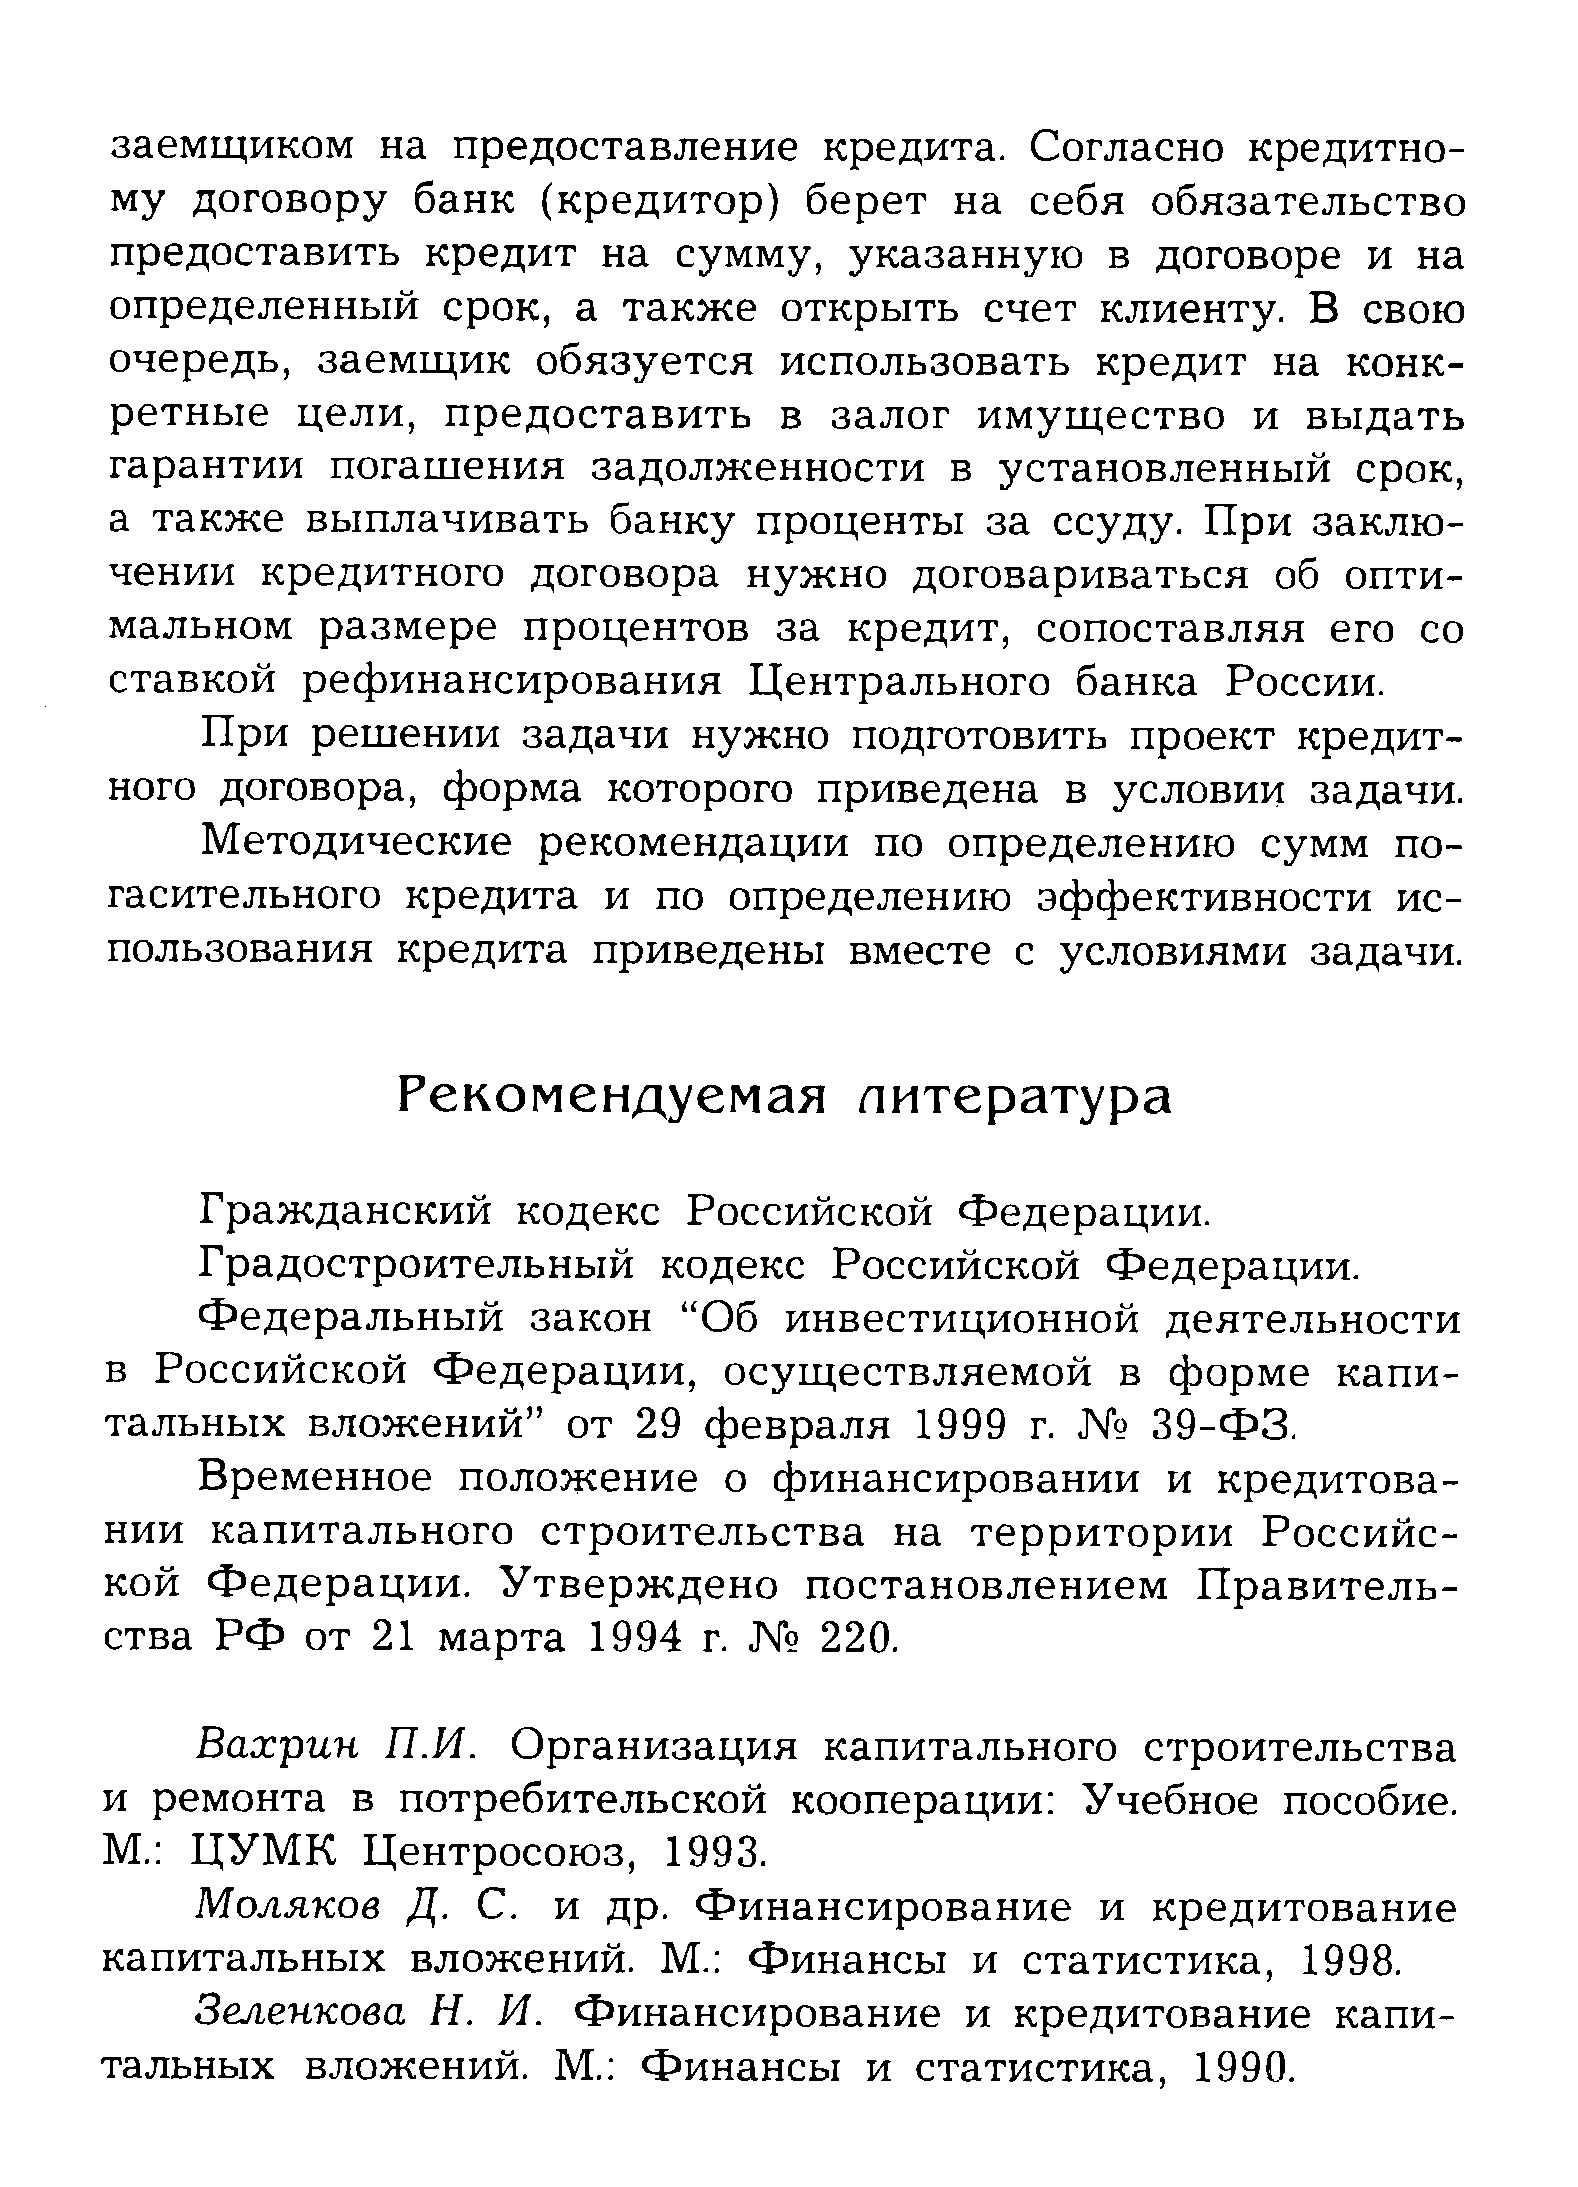 Гражданский кодекс Российской Федерации.
